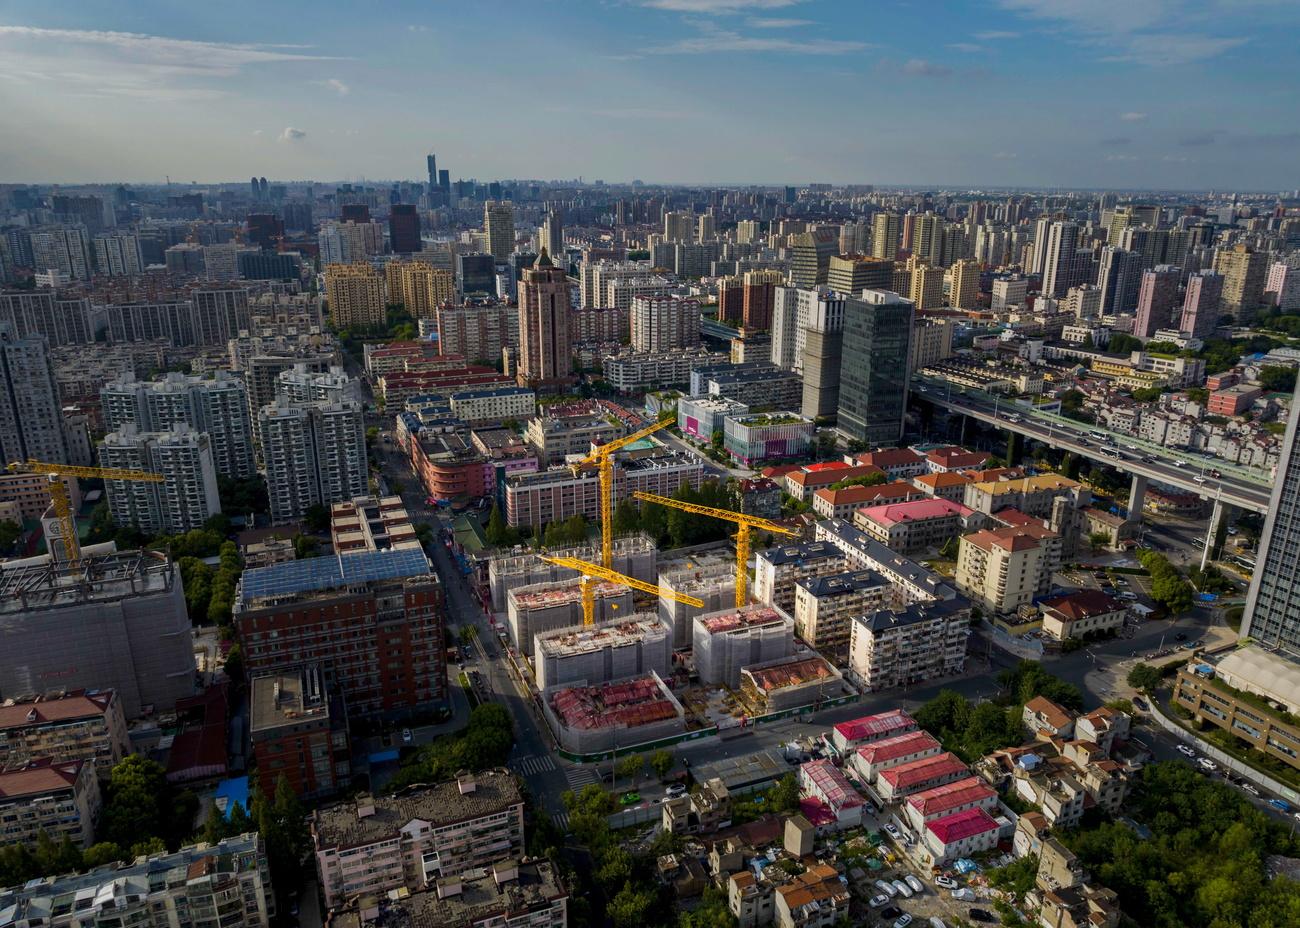 Pékin incite les collectivités locales à acheter à bas prix et louer ces logements à prix abordables. [KEYSTONE - ALEX PLAVEVSKI]